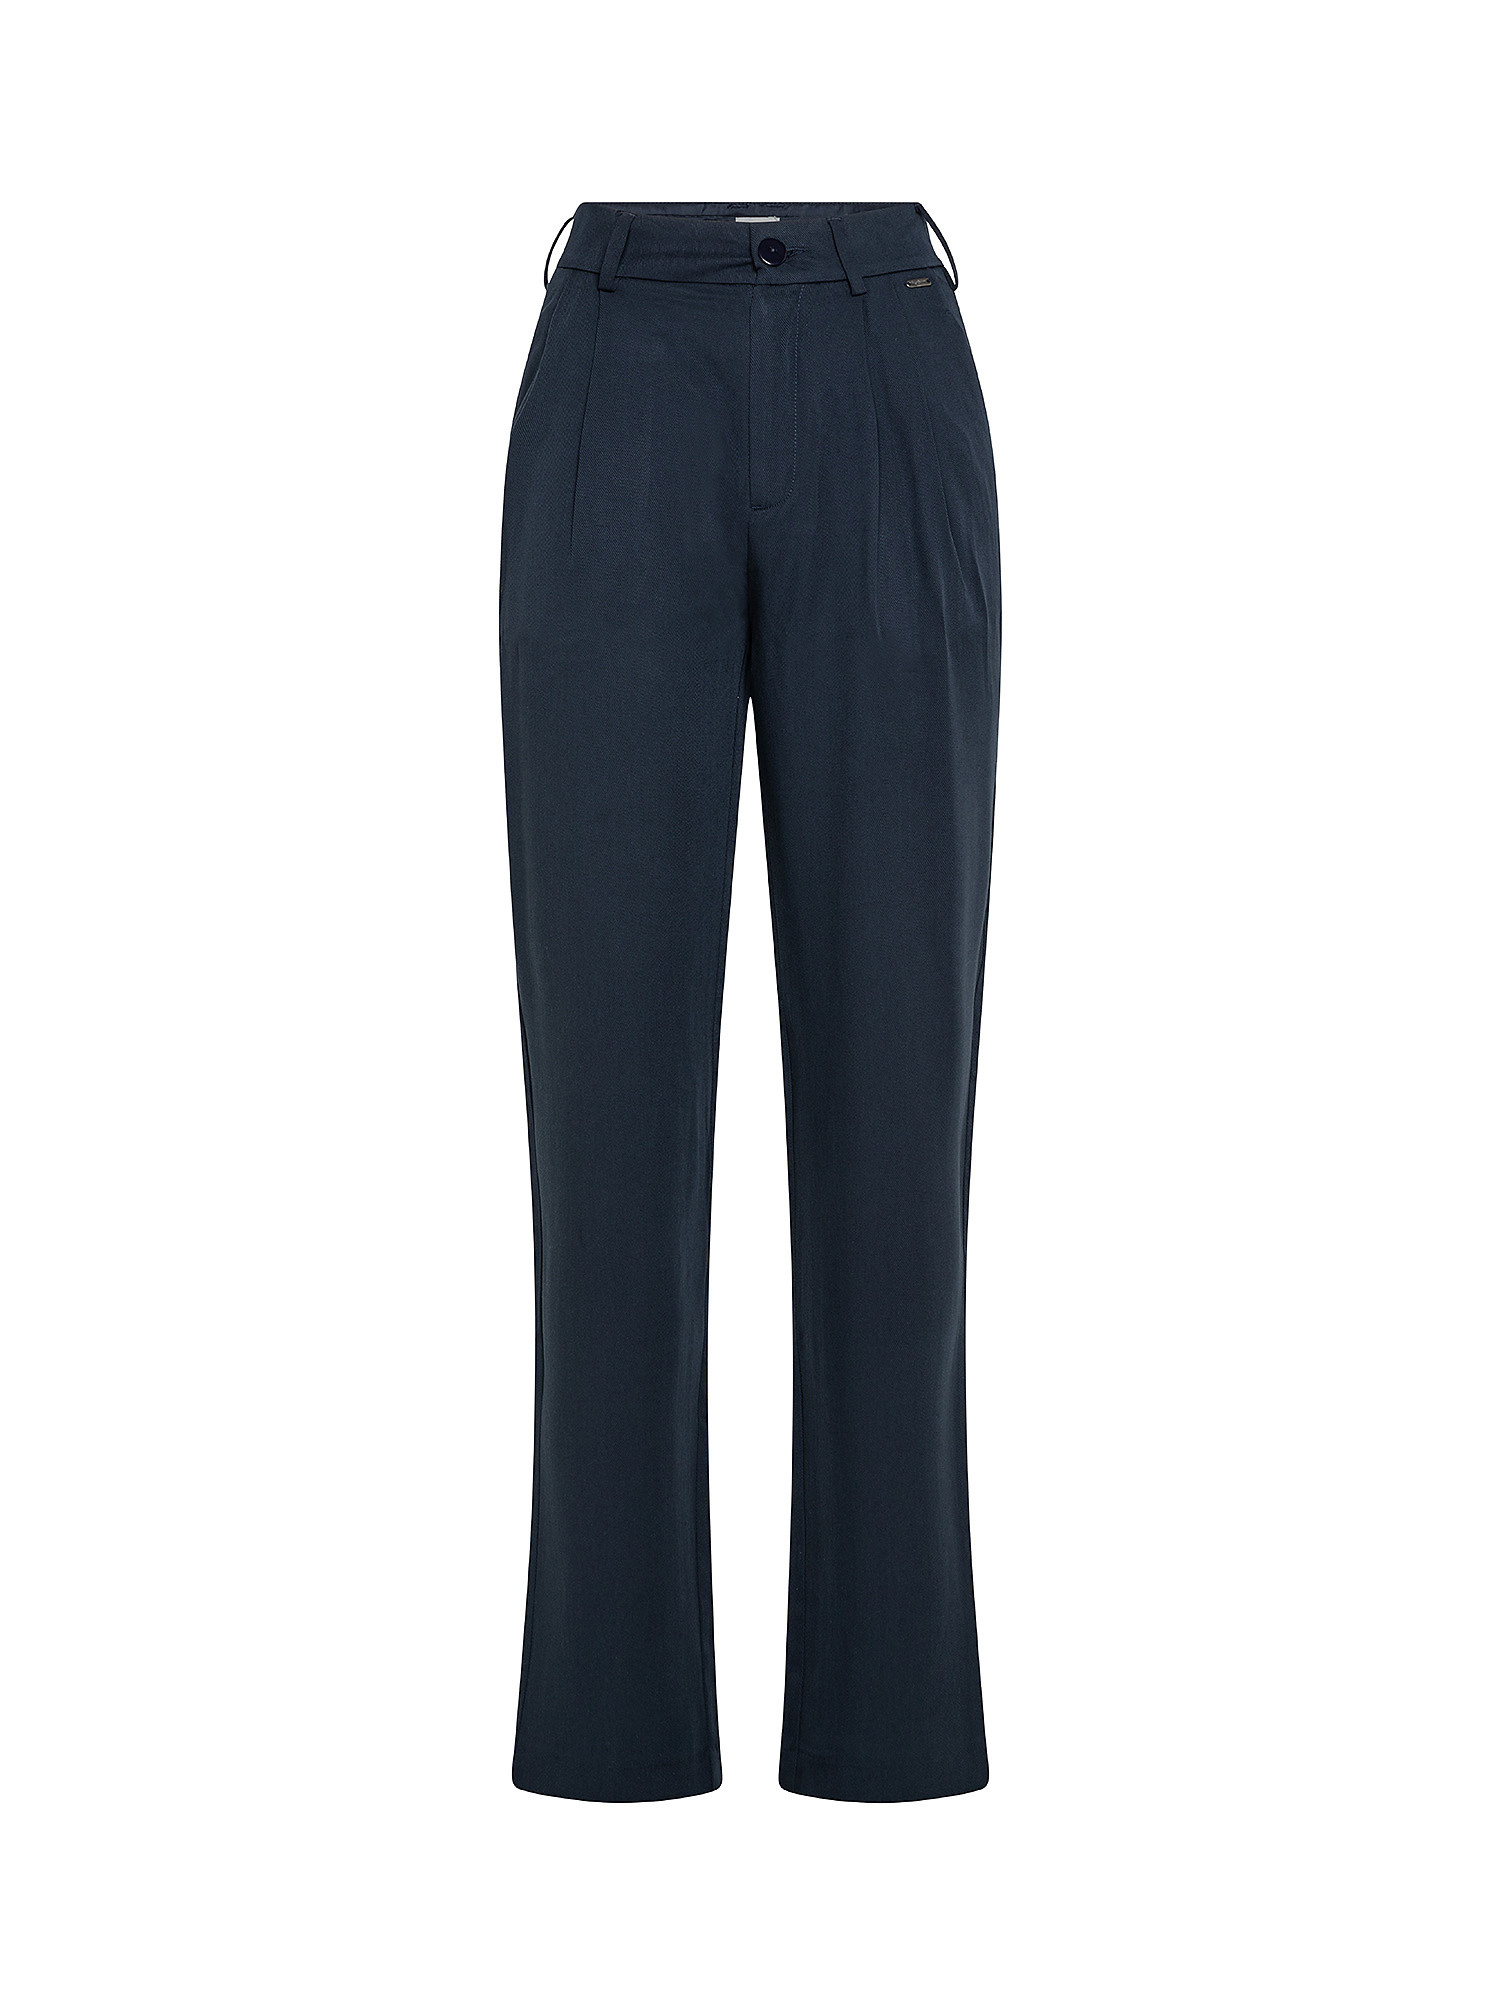 Pantaloni chino Fatima, Blu scuro, large image number 0